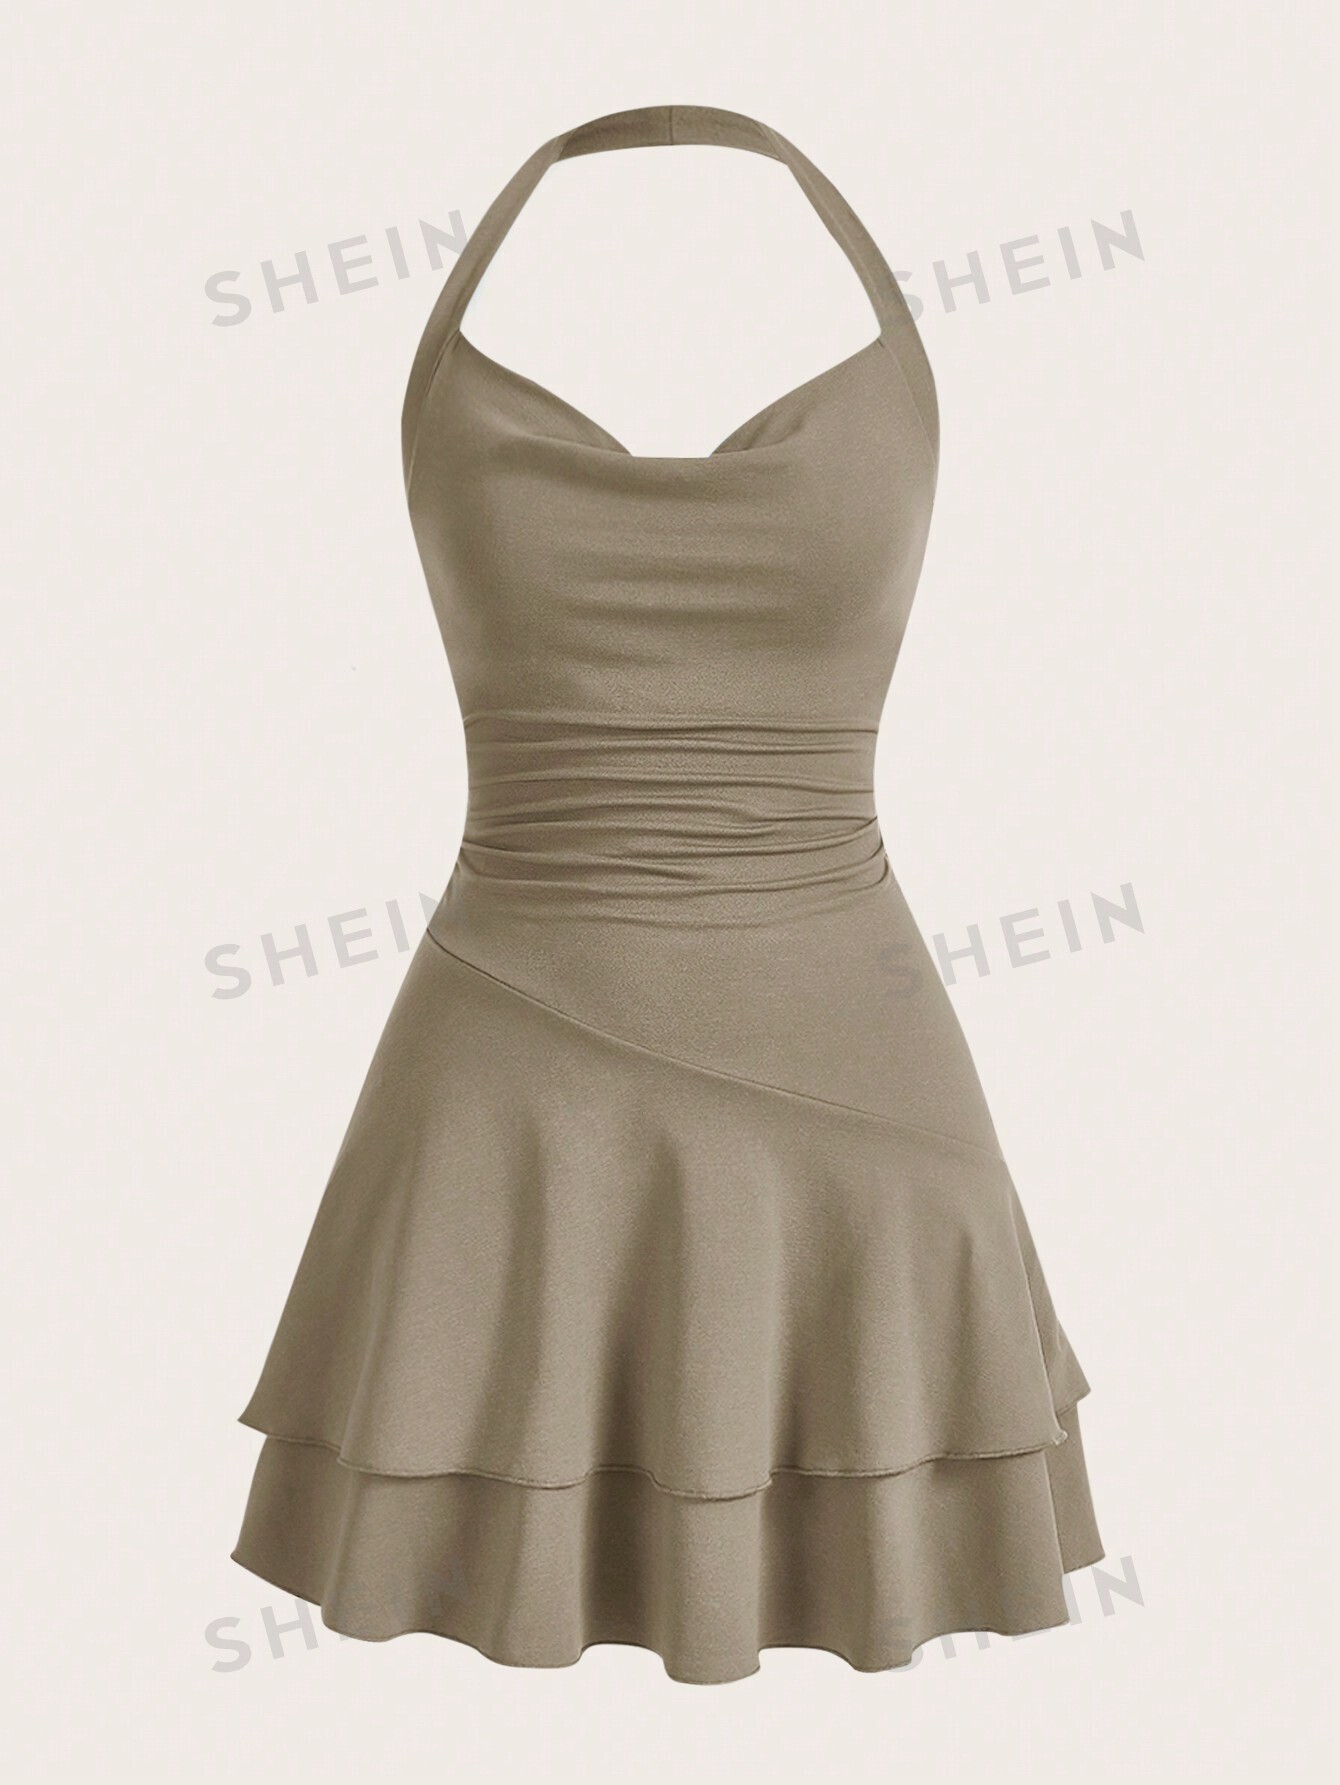 SHEIN MOD однотонное женское платье с бретелькой на шее и многослойным подолом, хаки цена и фото